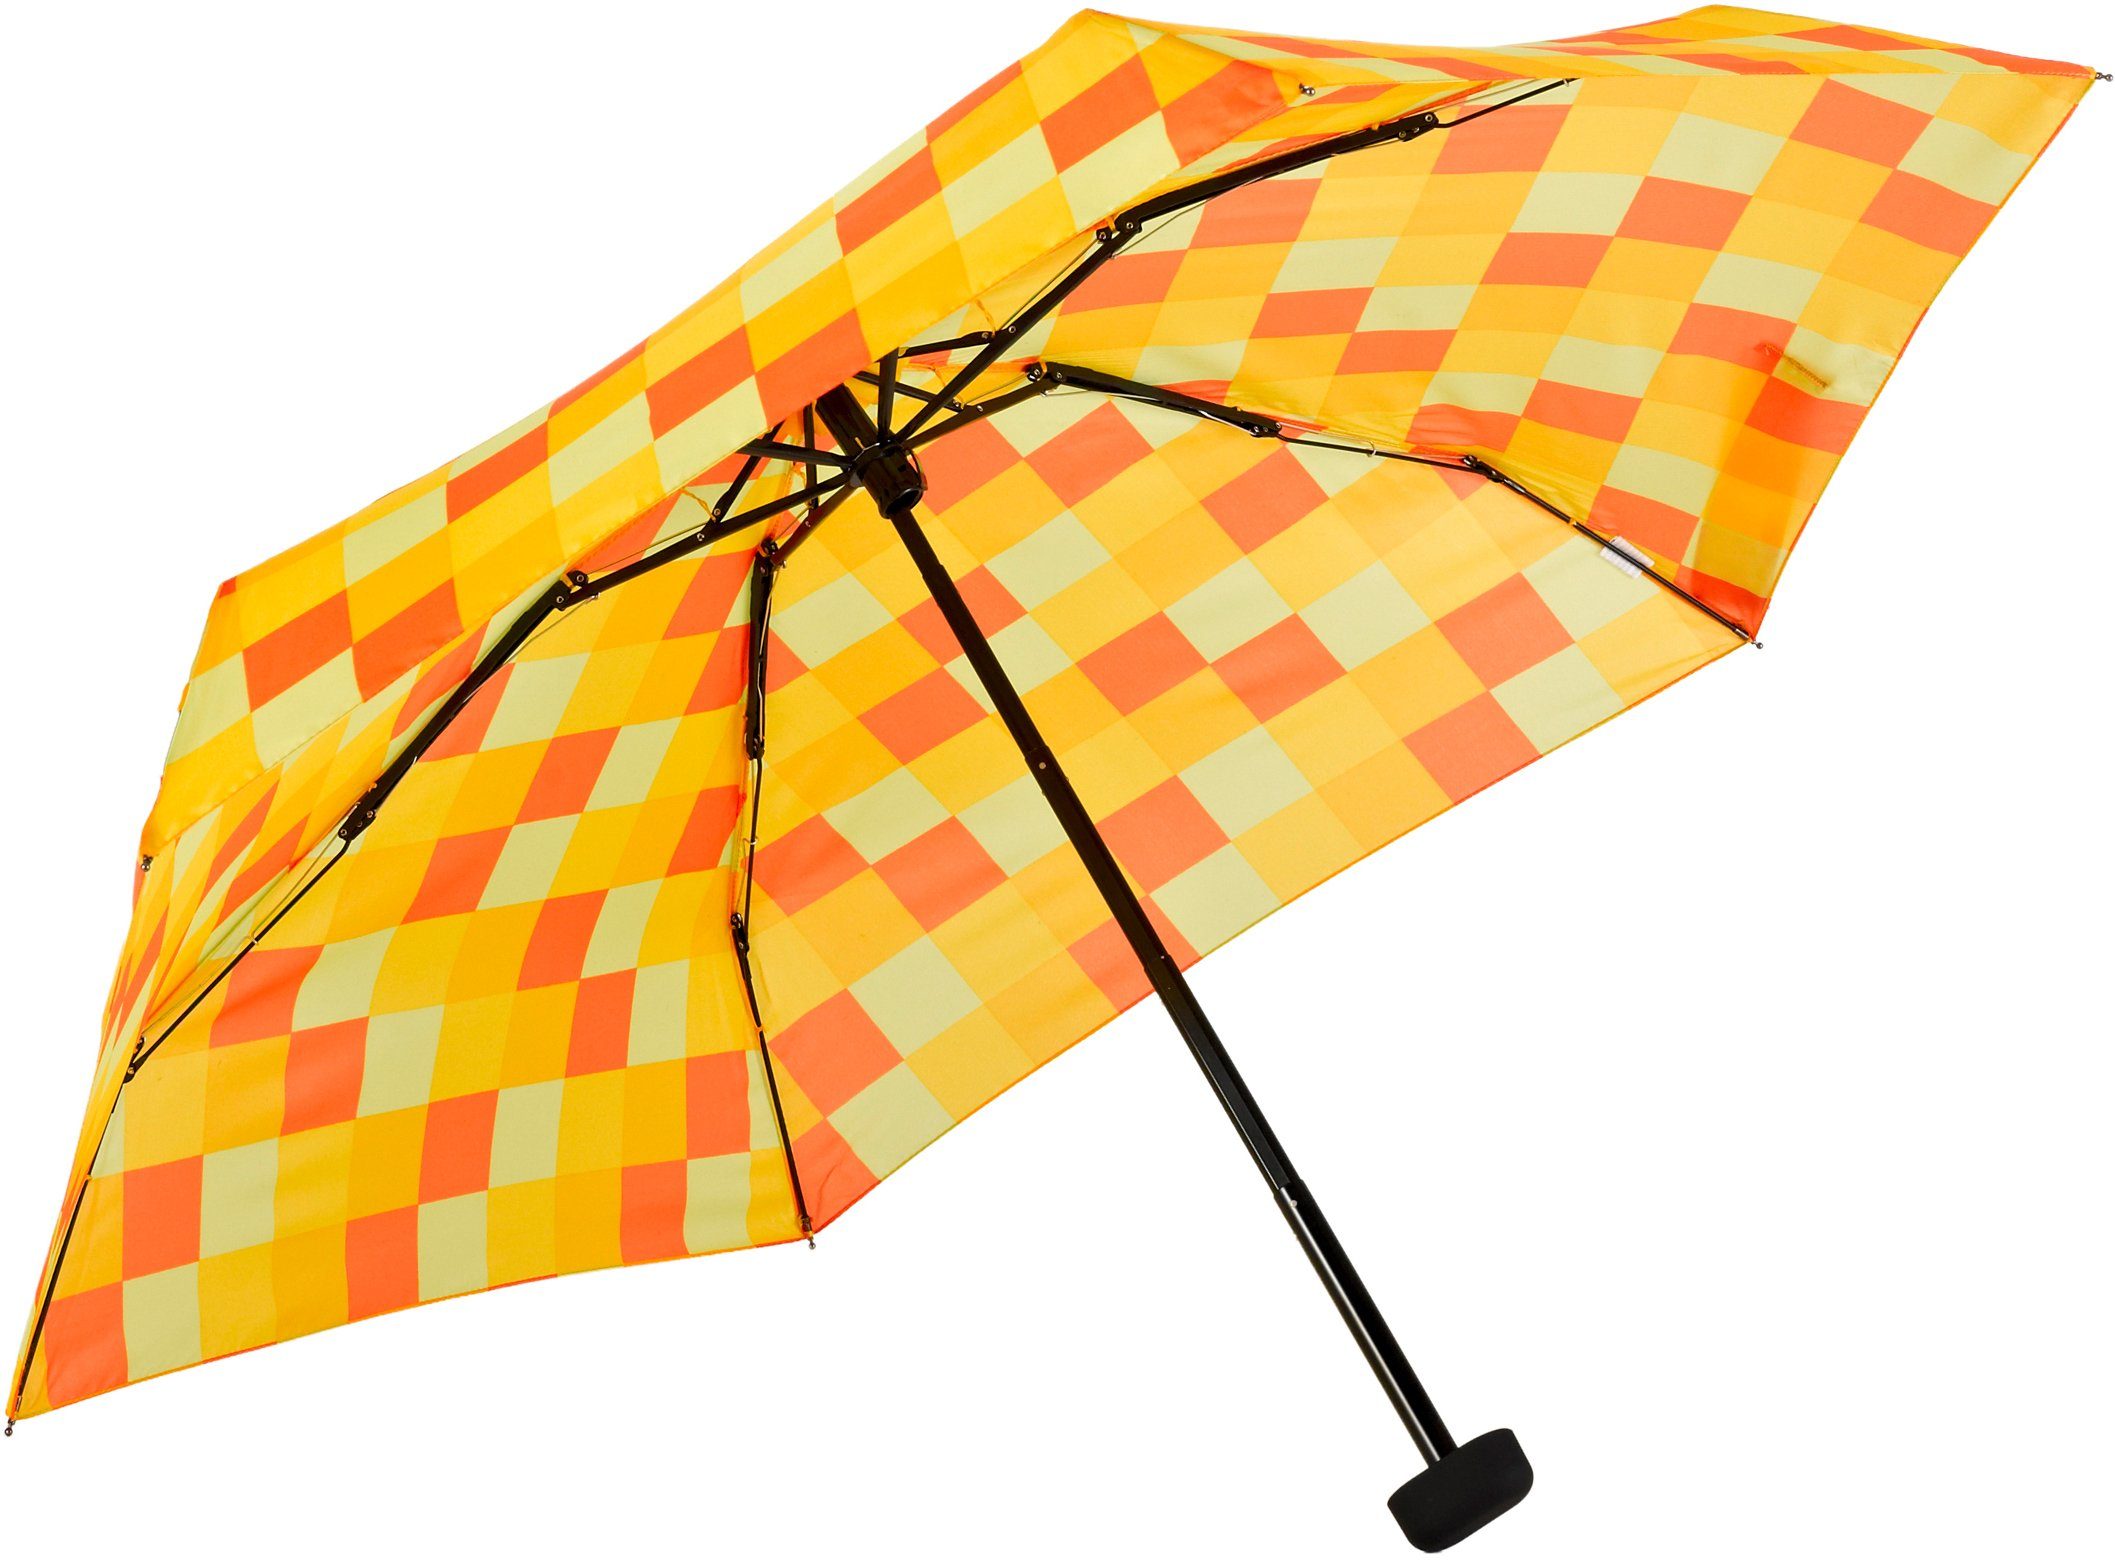 EuroSCHIRM® Taschenregenschirm Dainty, Karo und flach Karo orange gelb Regenschirm extra »Dainty« kurz, Mini EuroSCHIRM® gelb orange